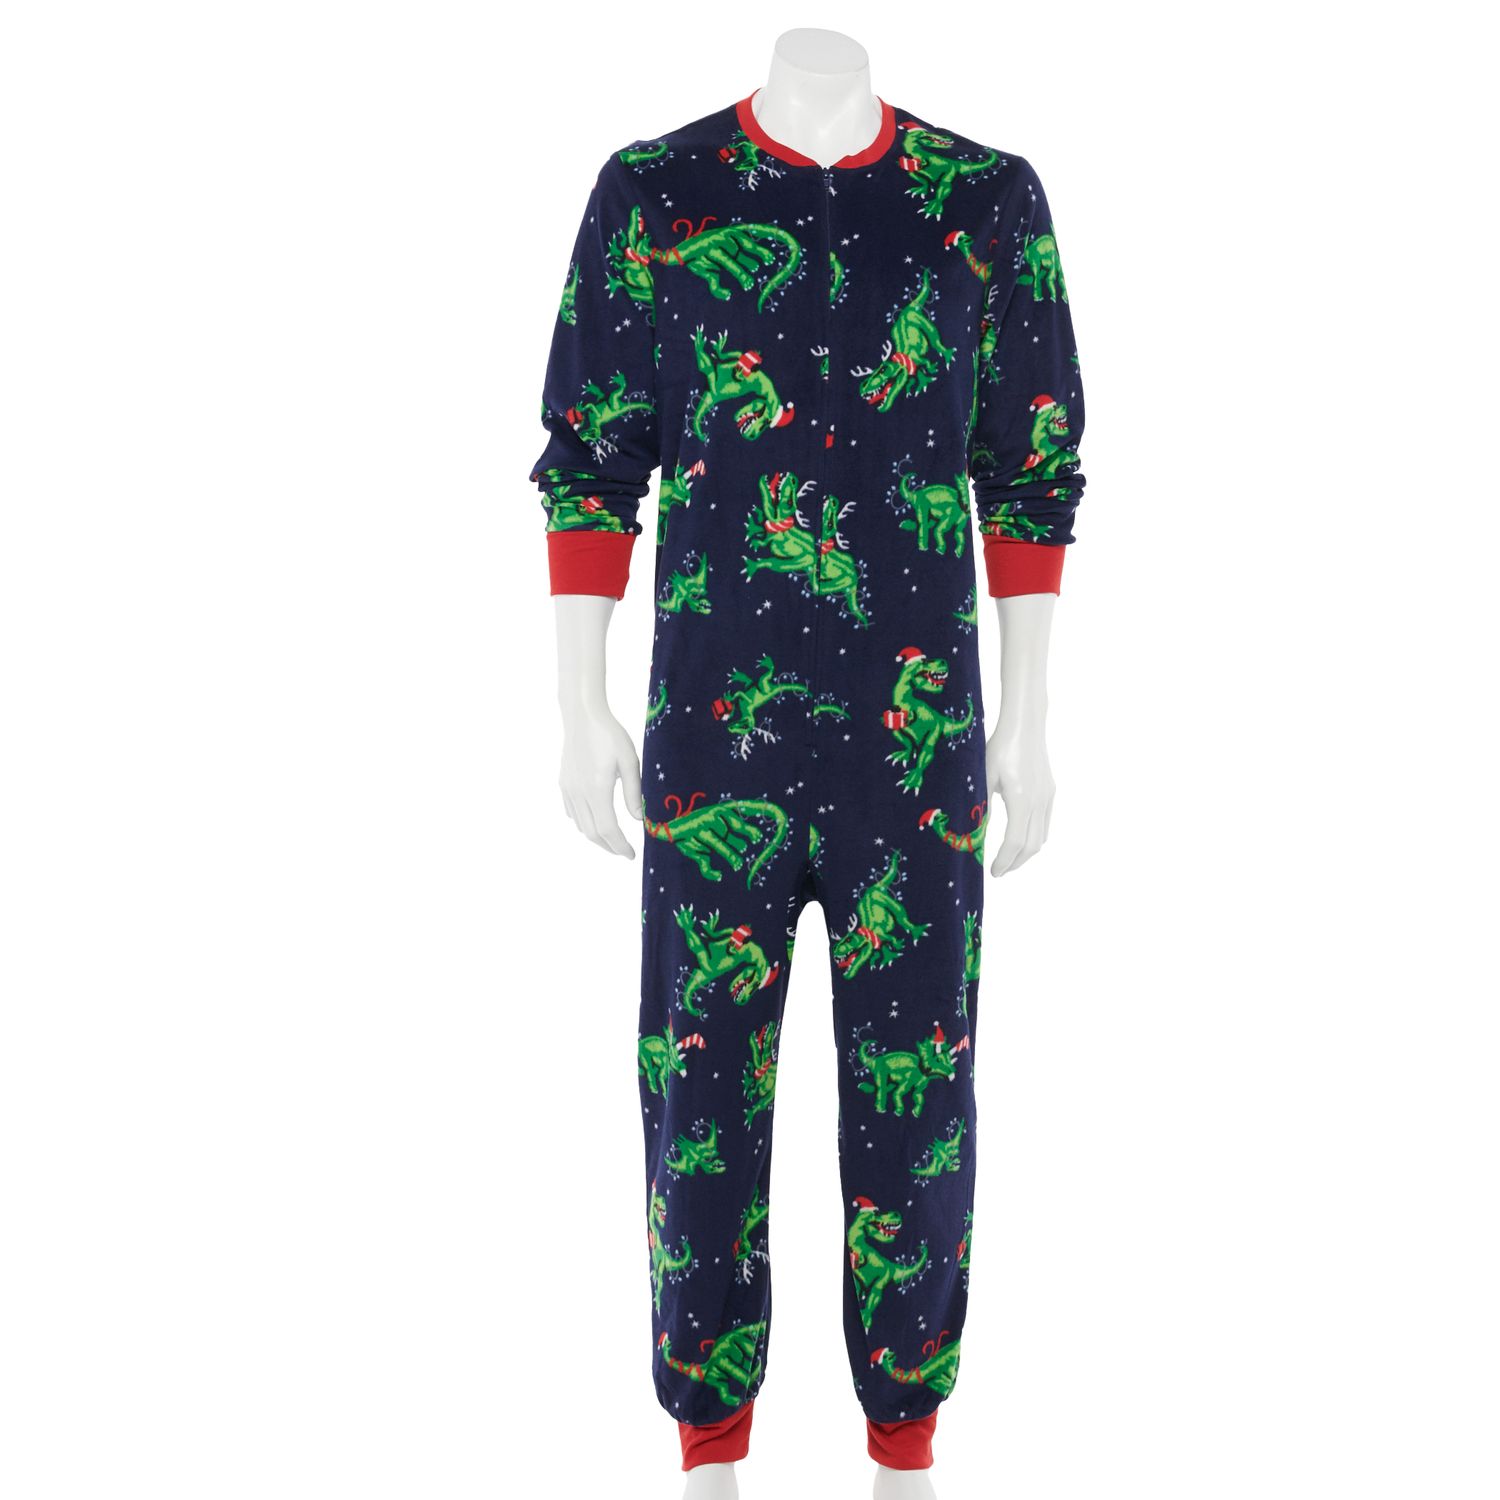 Dinosaur pajamas adult